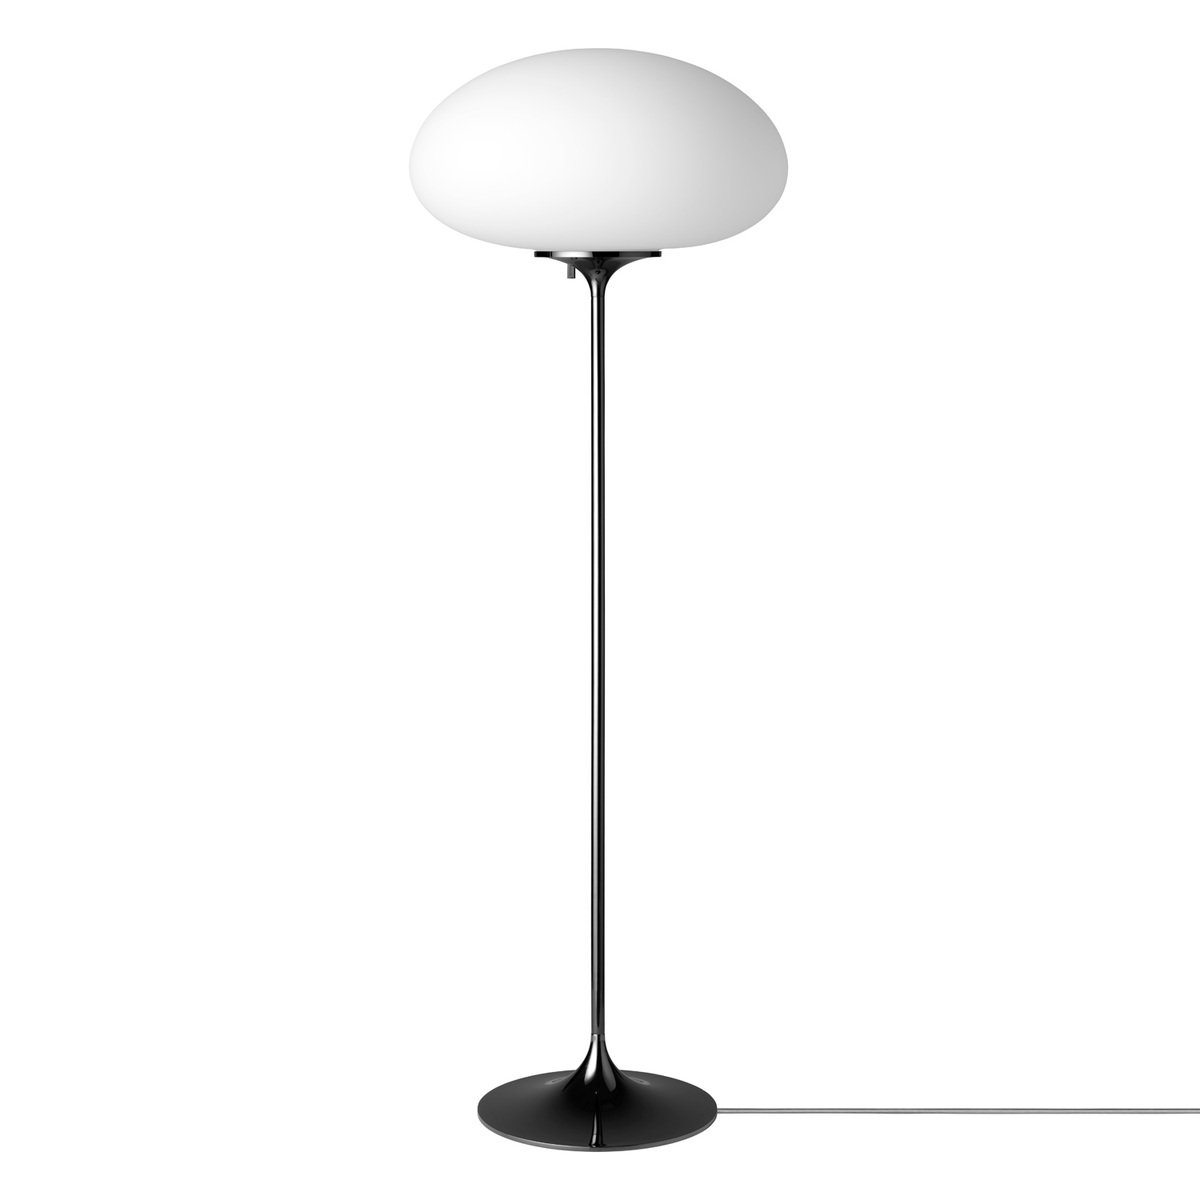 Gubi Stemlite Floor Lamp, 110 Cm, Dimmable, Black Chrome